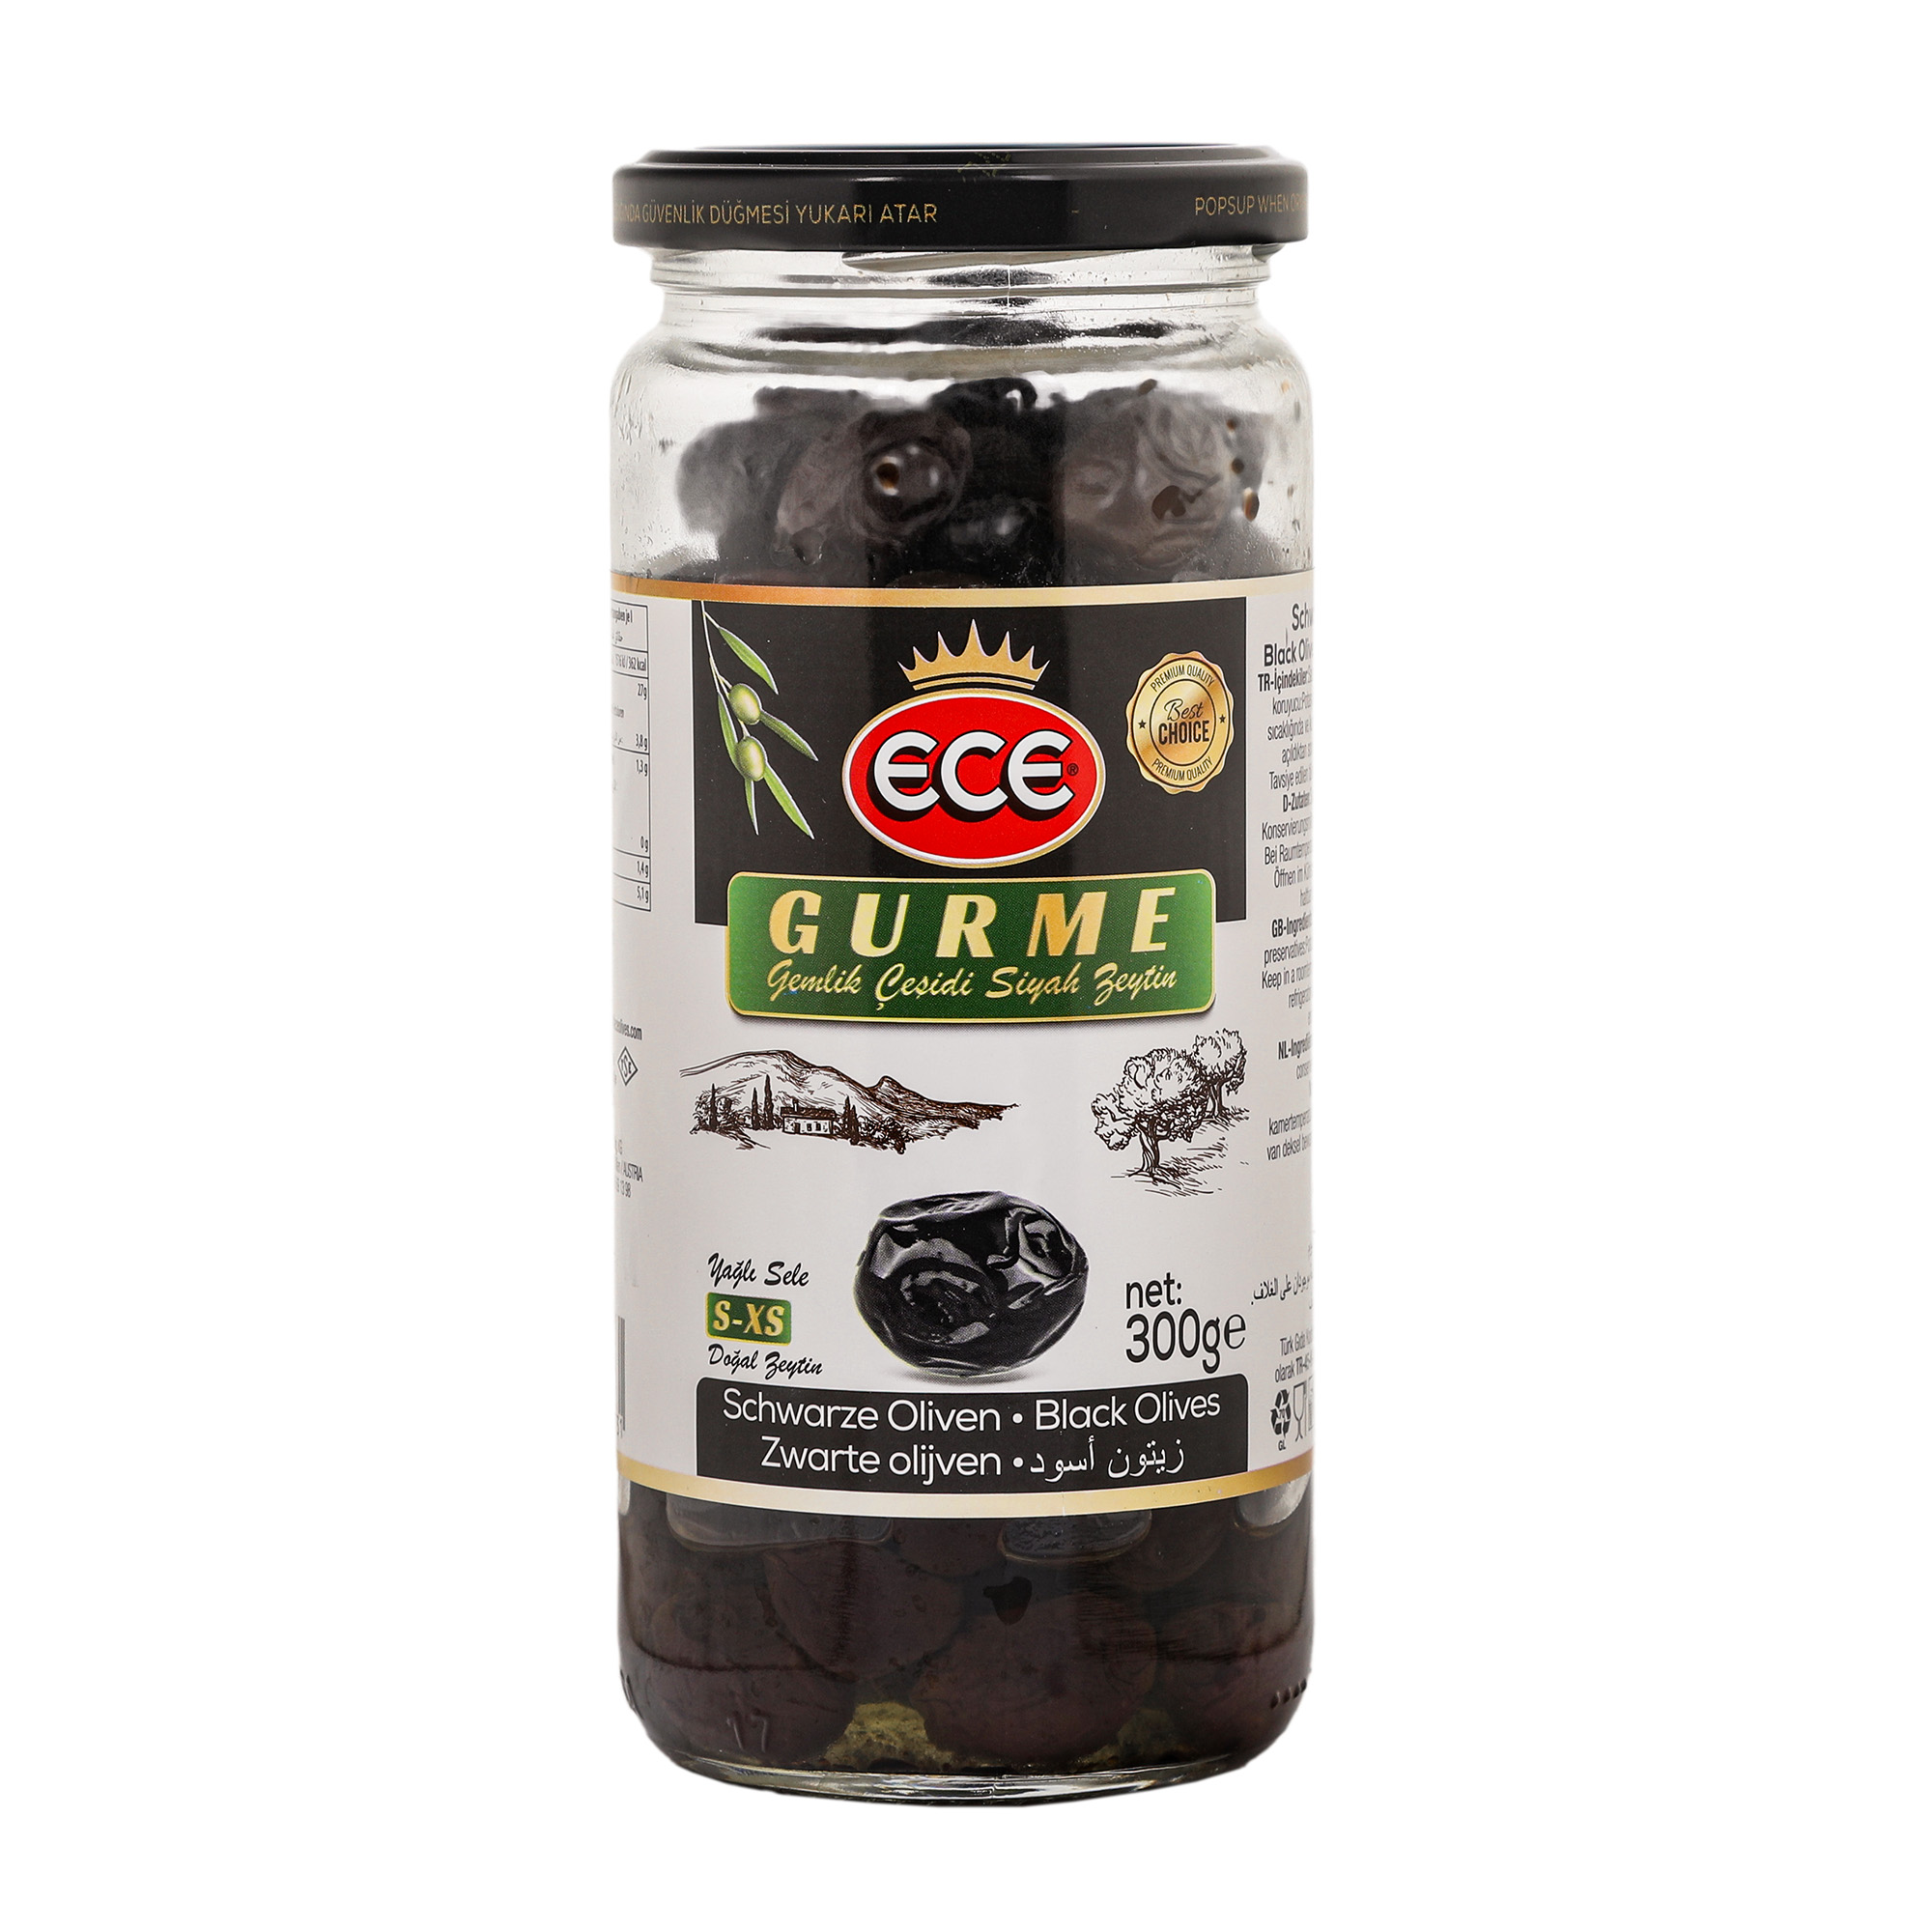 Оливки черные Ece Gurme в масле с косточкой, 300 г маслины delphi зароменес с косточкой в масле 340 г